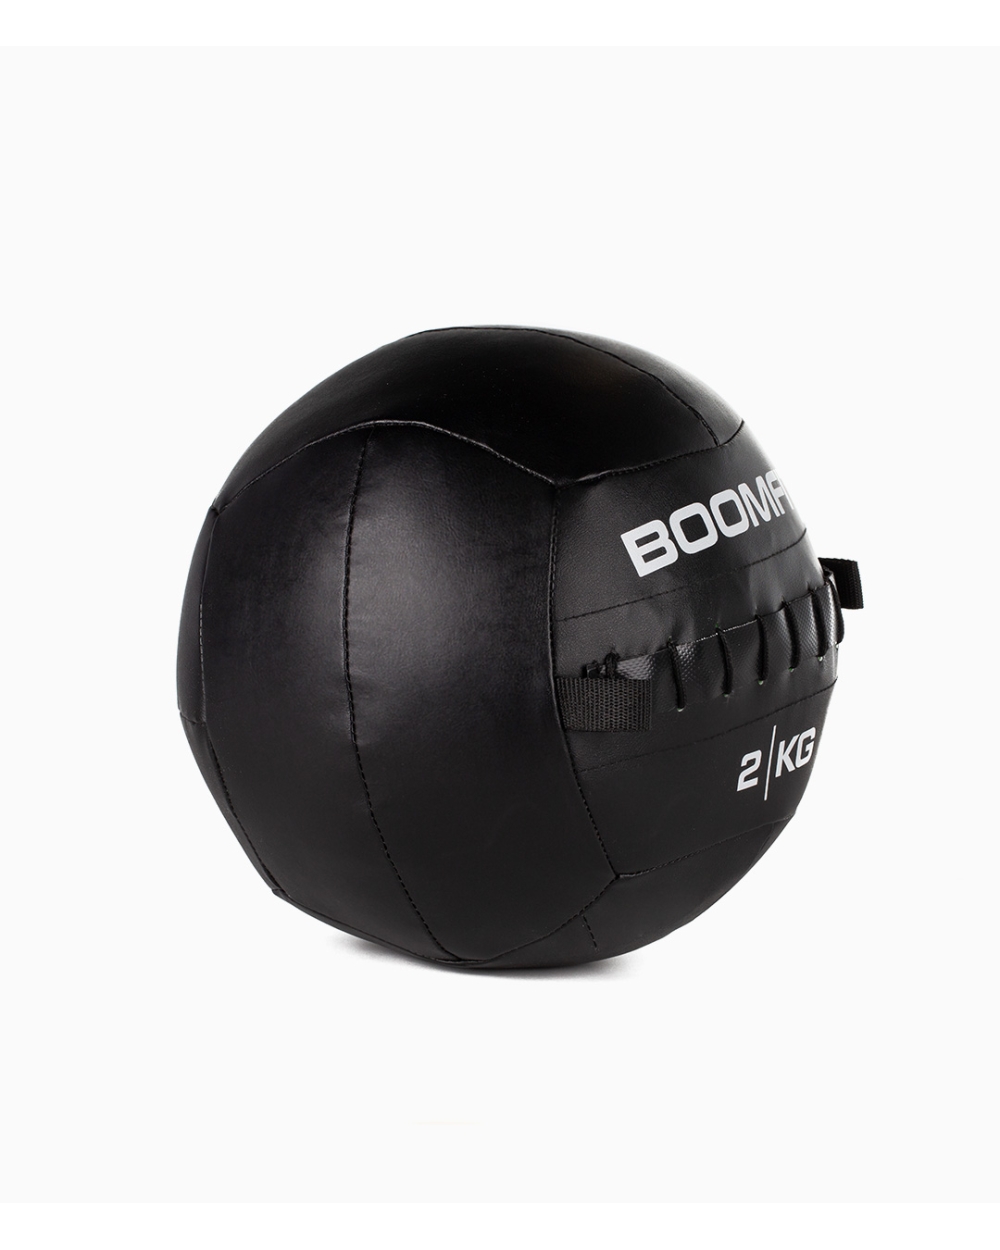 Balón Medicinal Boomfit 2kg - Wall Ball 2kg - Boomfit  MKP